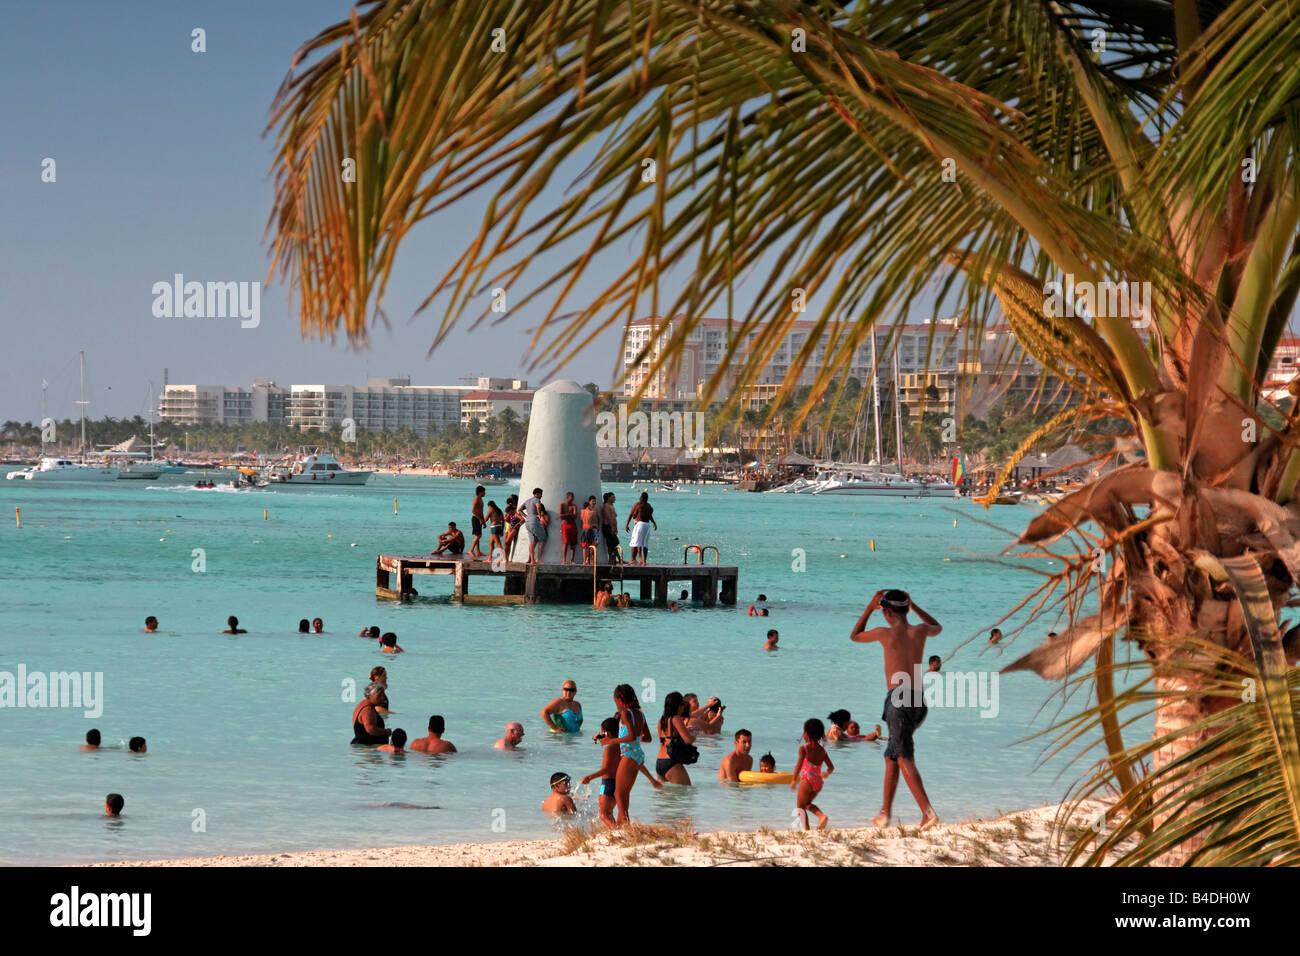 Palm Beach Aruba Antilles néerlandaises Antilles Amérique centrale de la population locale à la plage le dimanche Banque D'Images